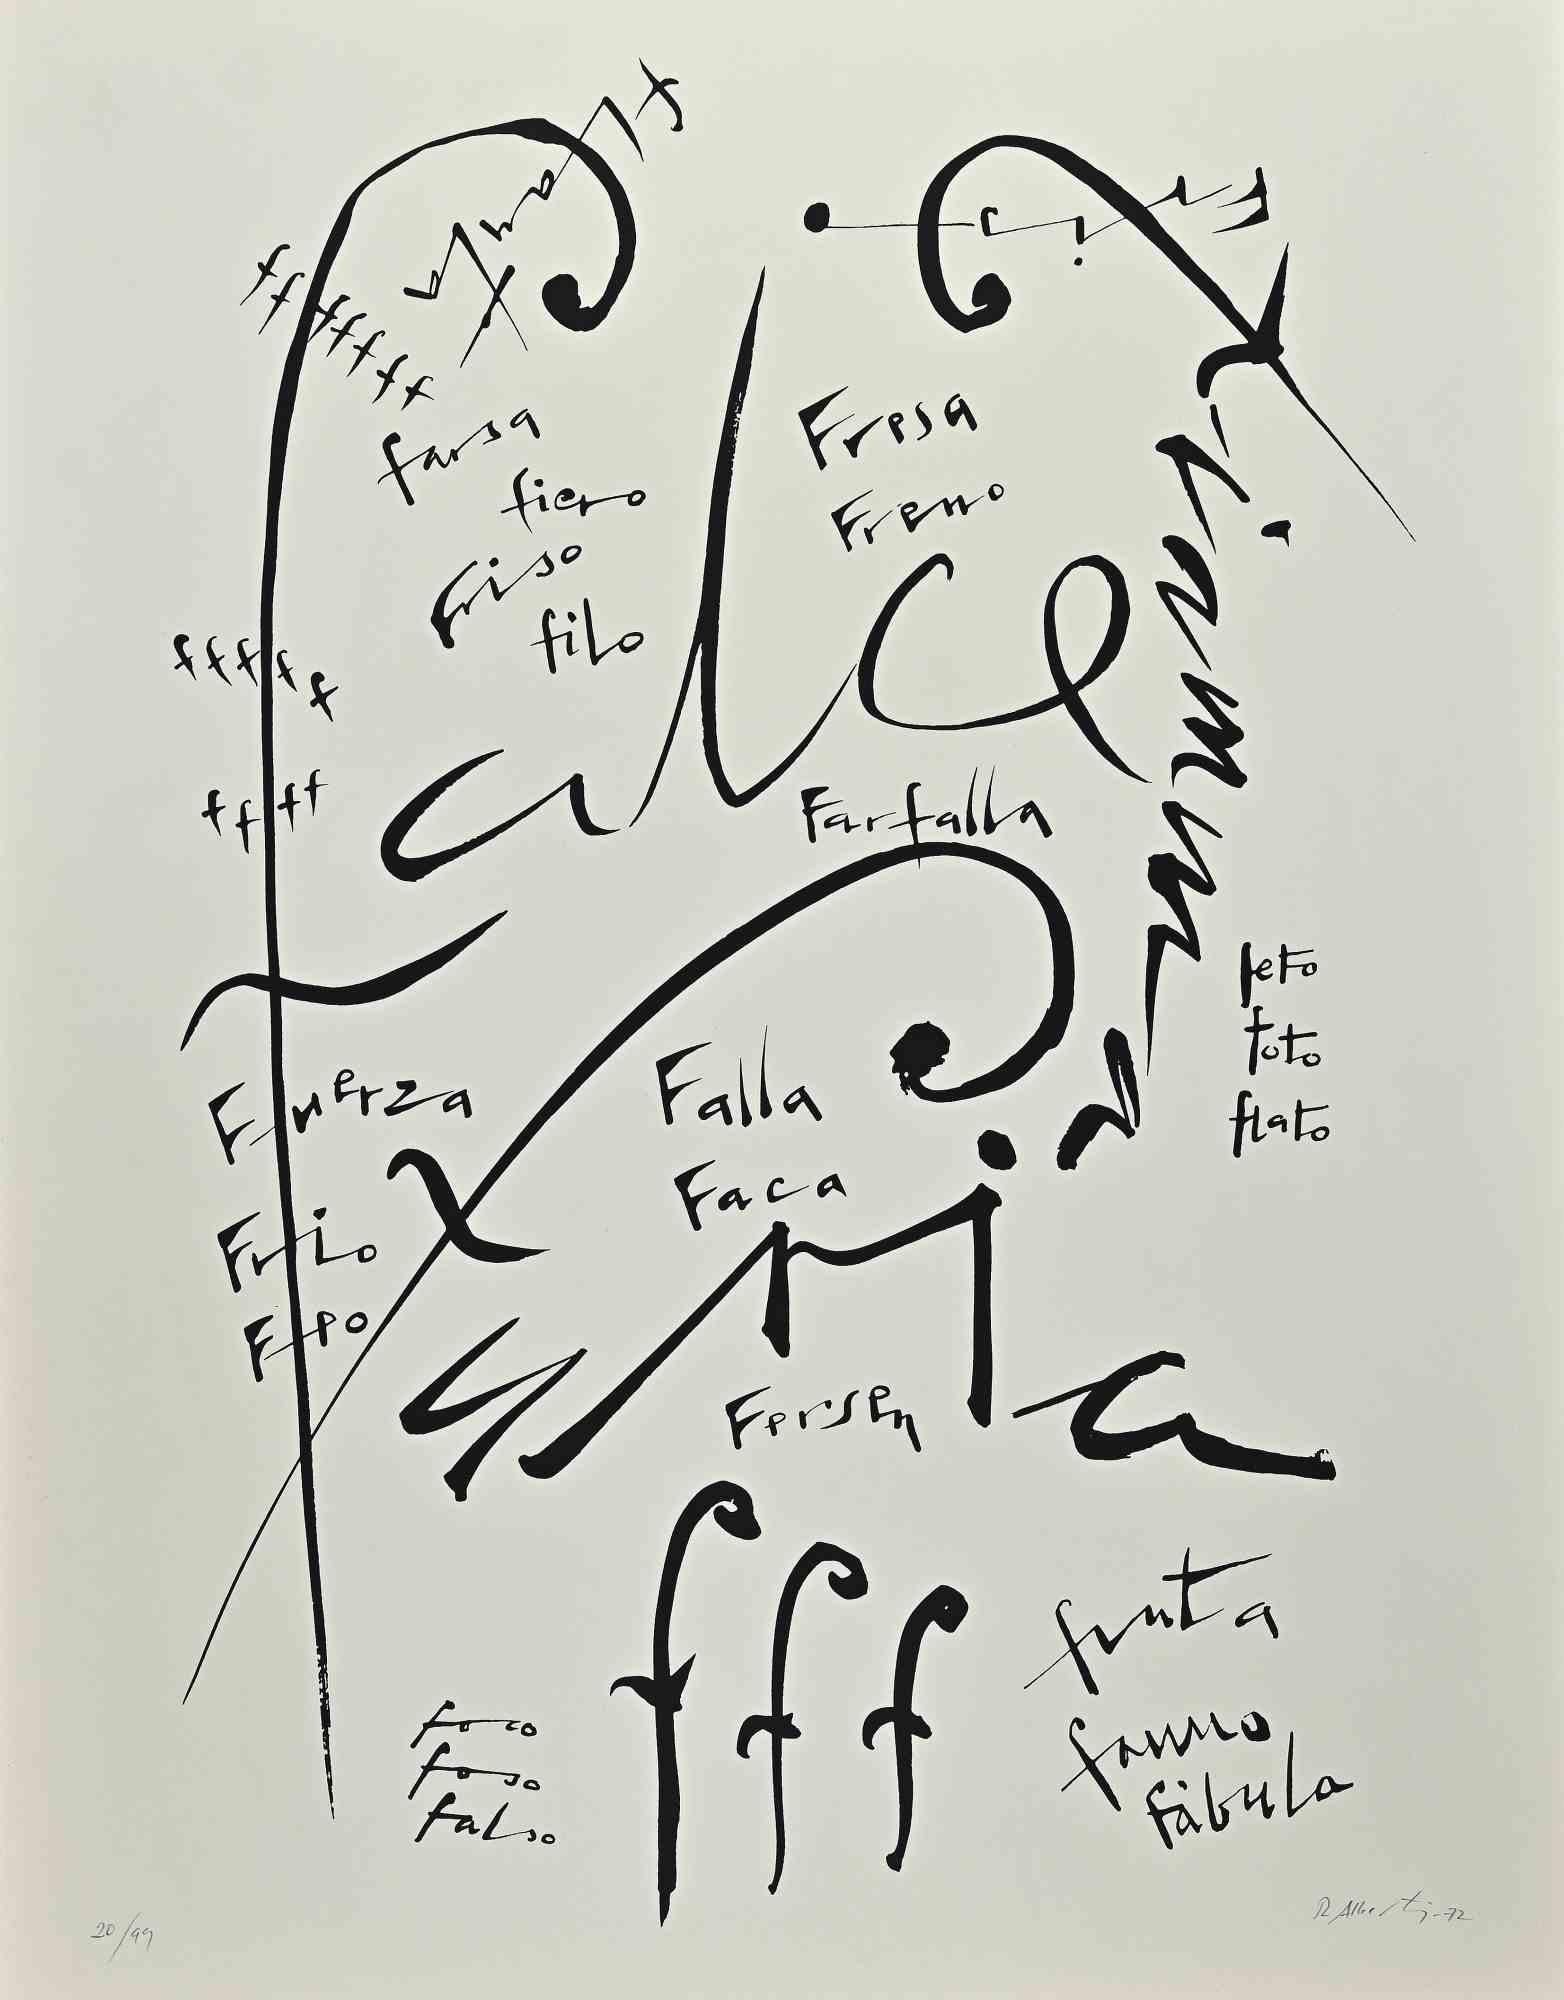 Lettre F  de la série Alphabet est une lithographie originale réalisée par Rafael Alberti en 1972.

Signé et daté à la main dans la marge inférieure.

Numéroté dans la marge inférieure. Edition 20/99

Bonnes conditions

L'œuvre représente la lettre